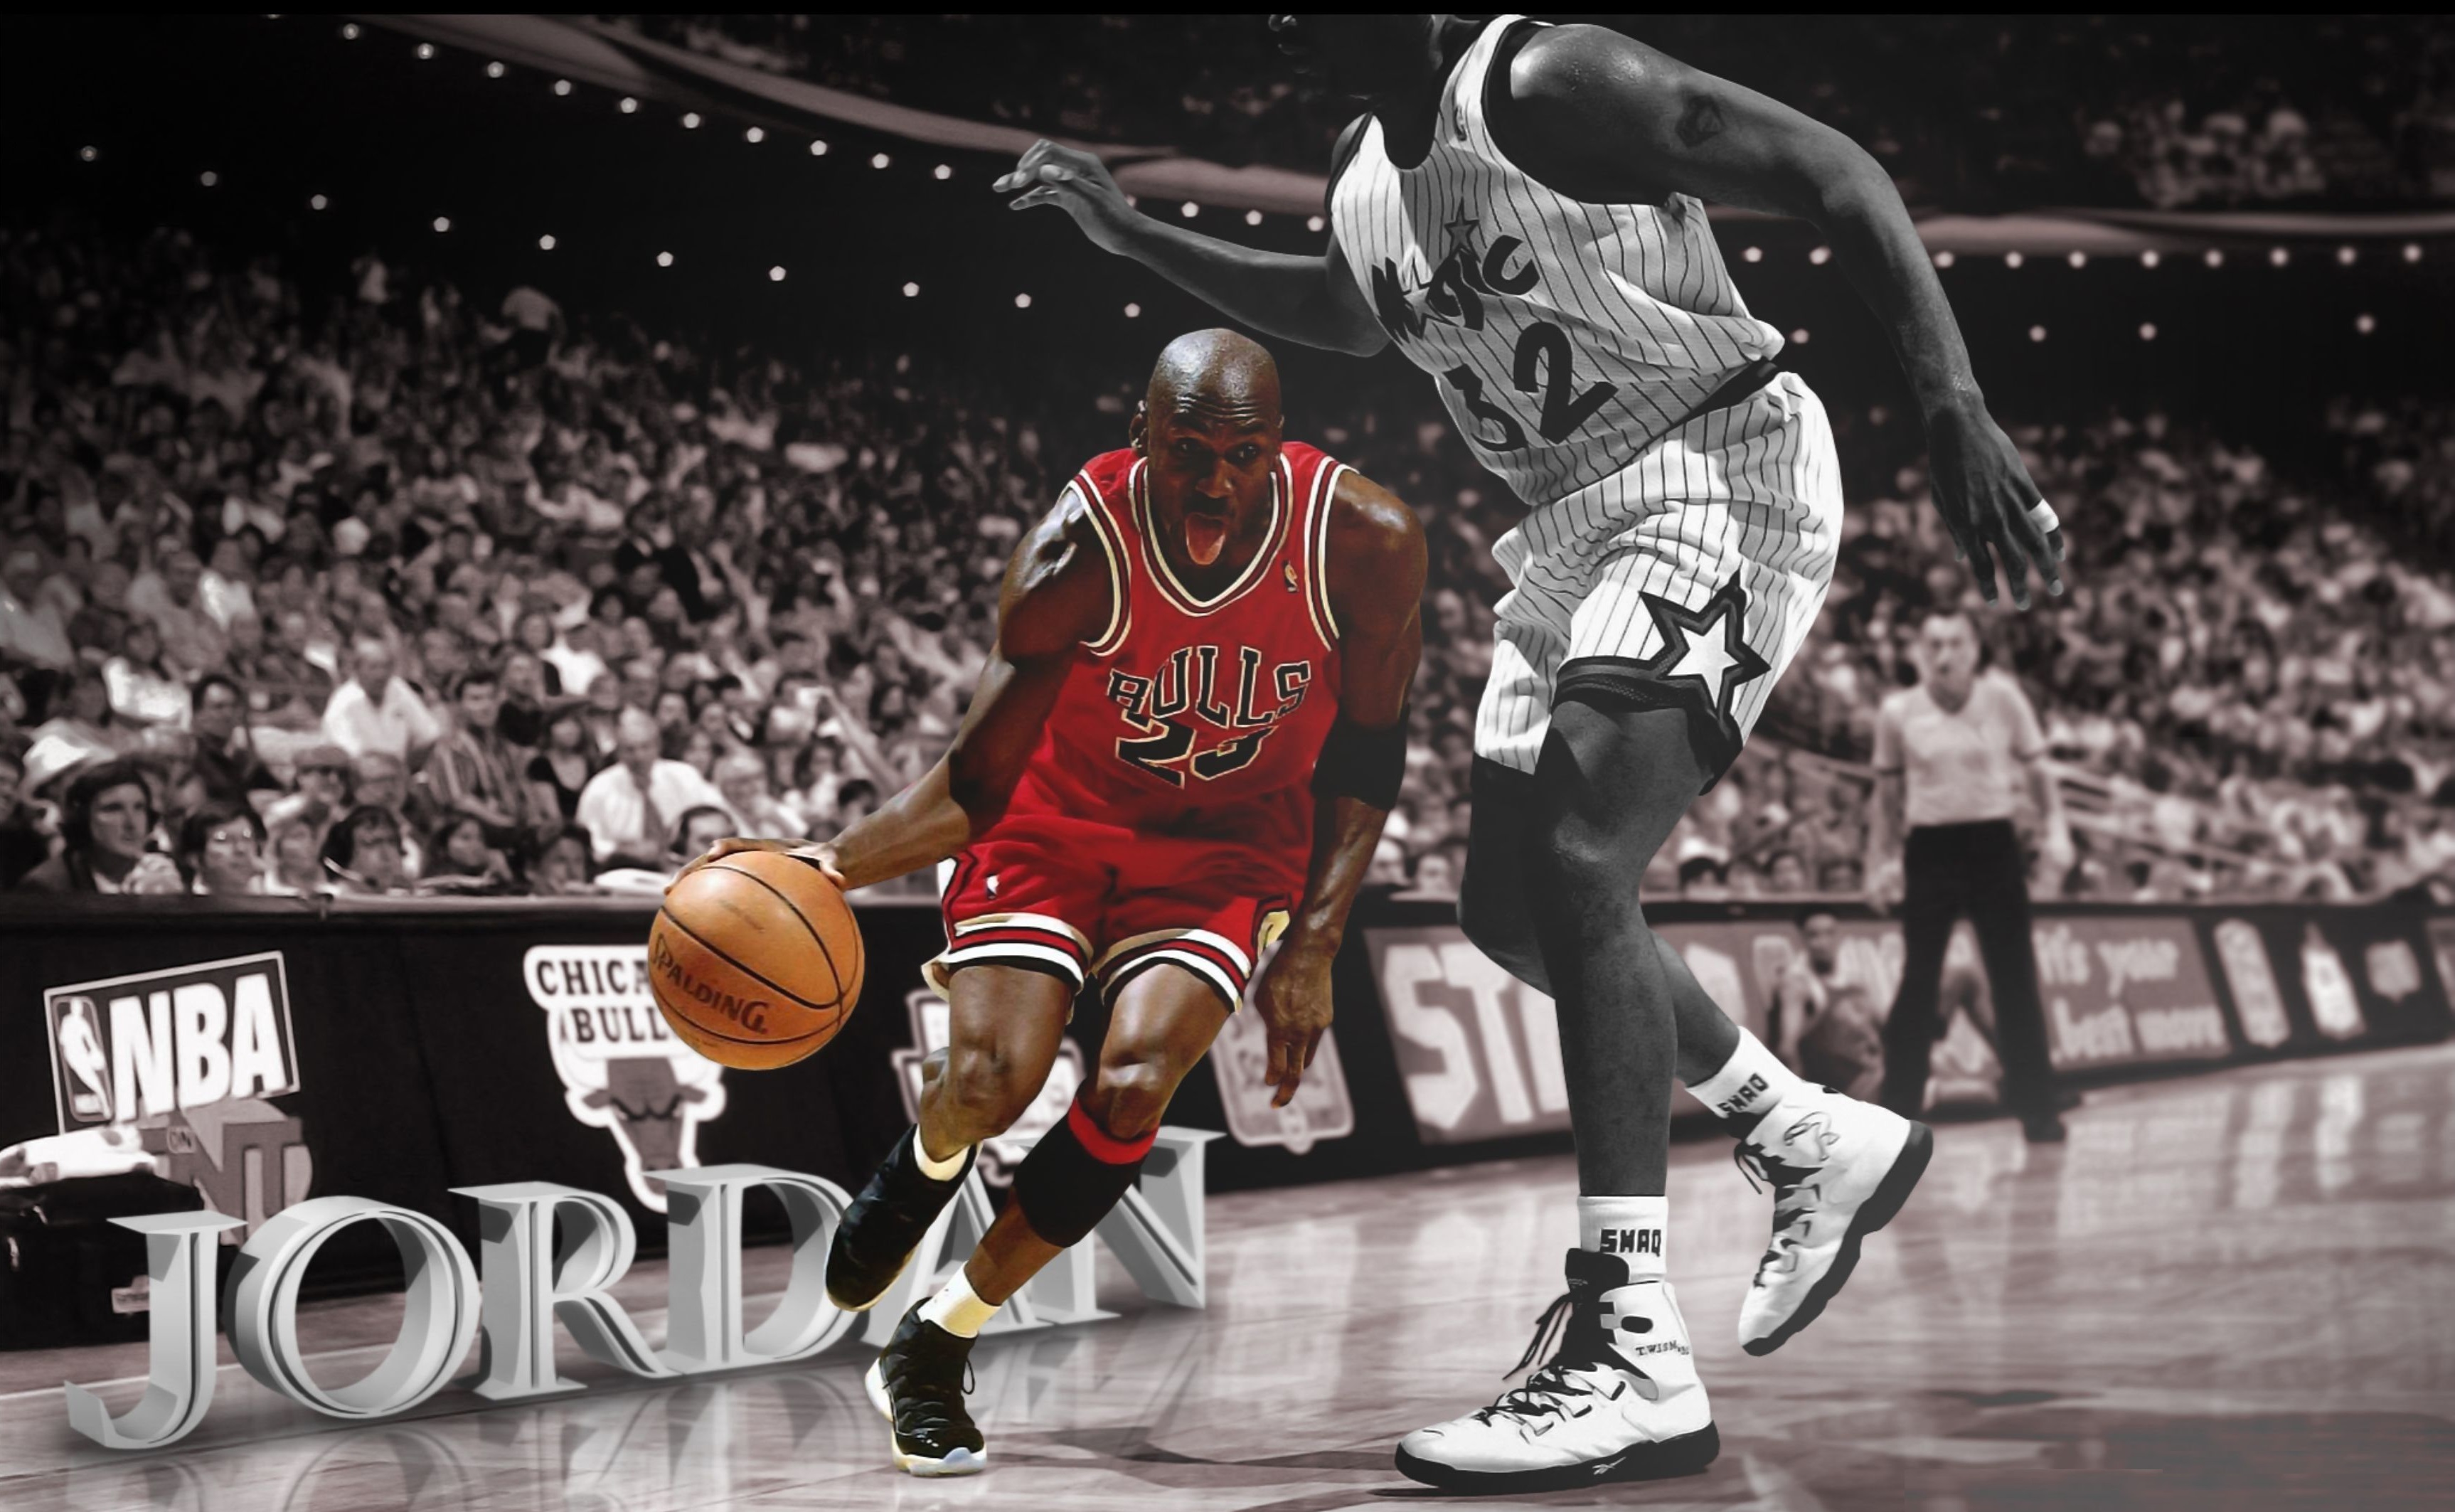 Retro Michael Jordan Wallpapers Wallpapers